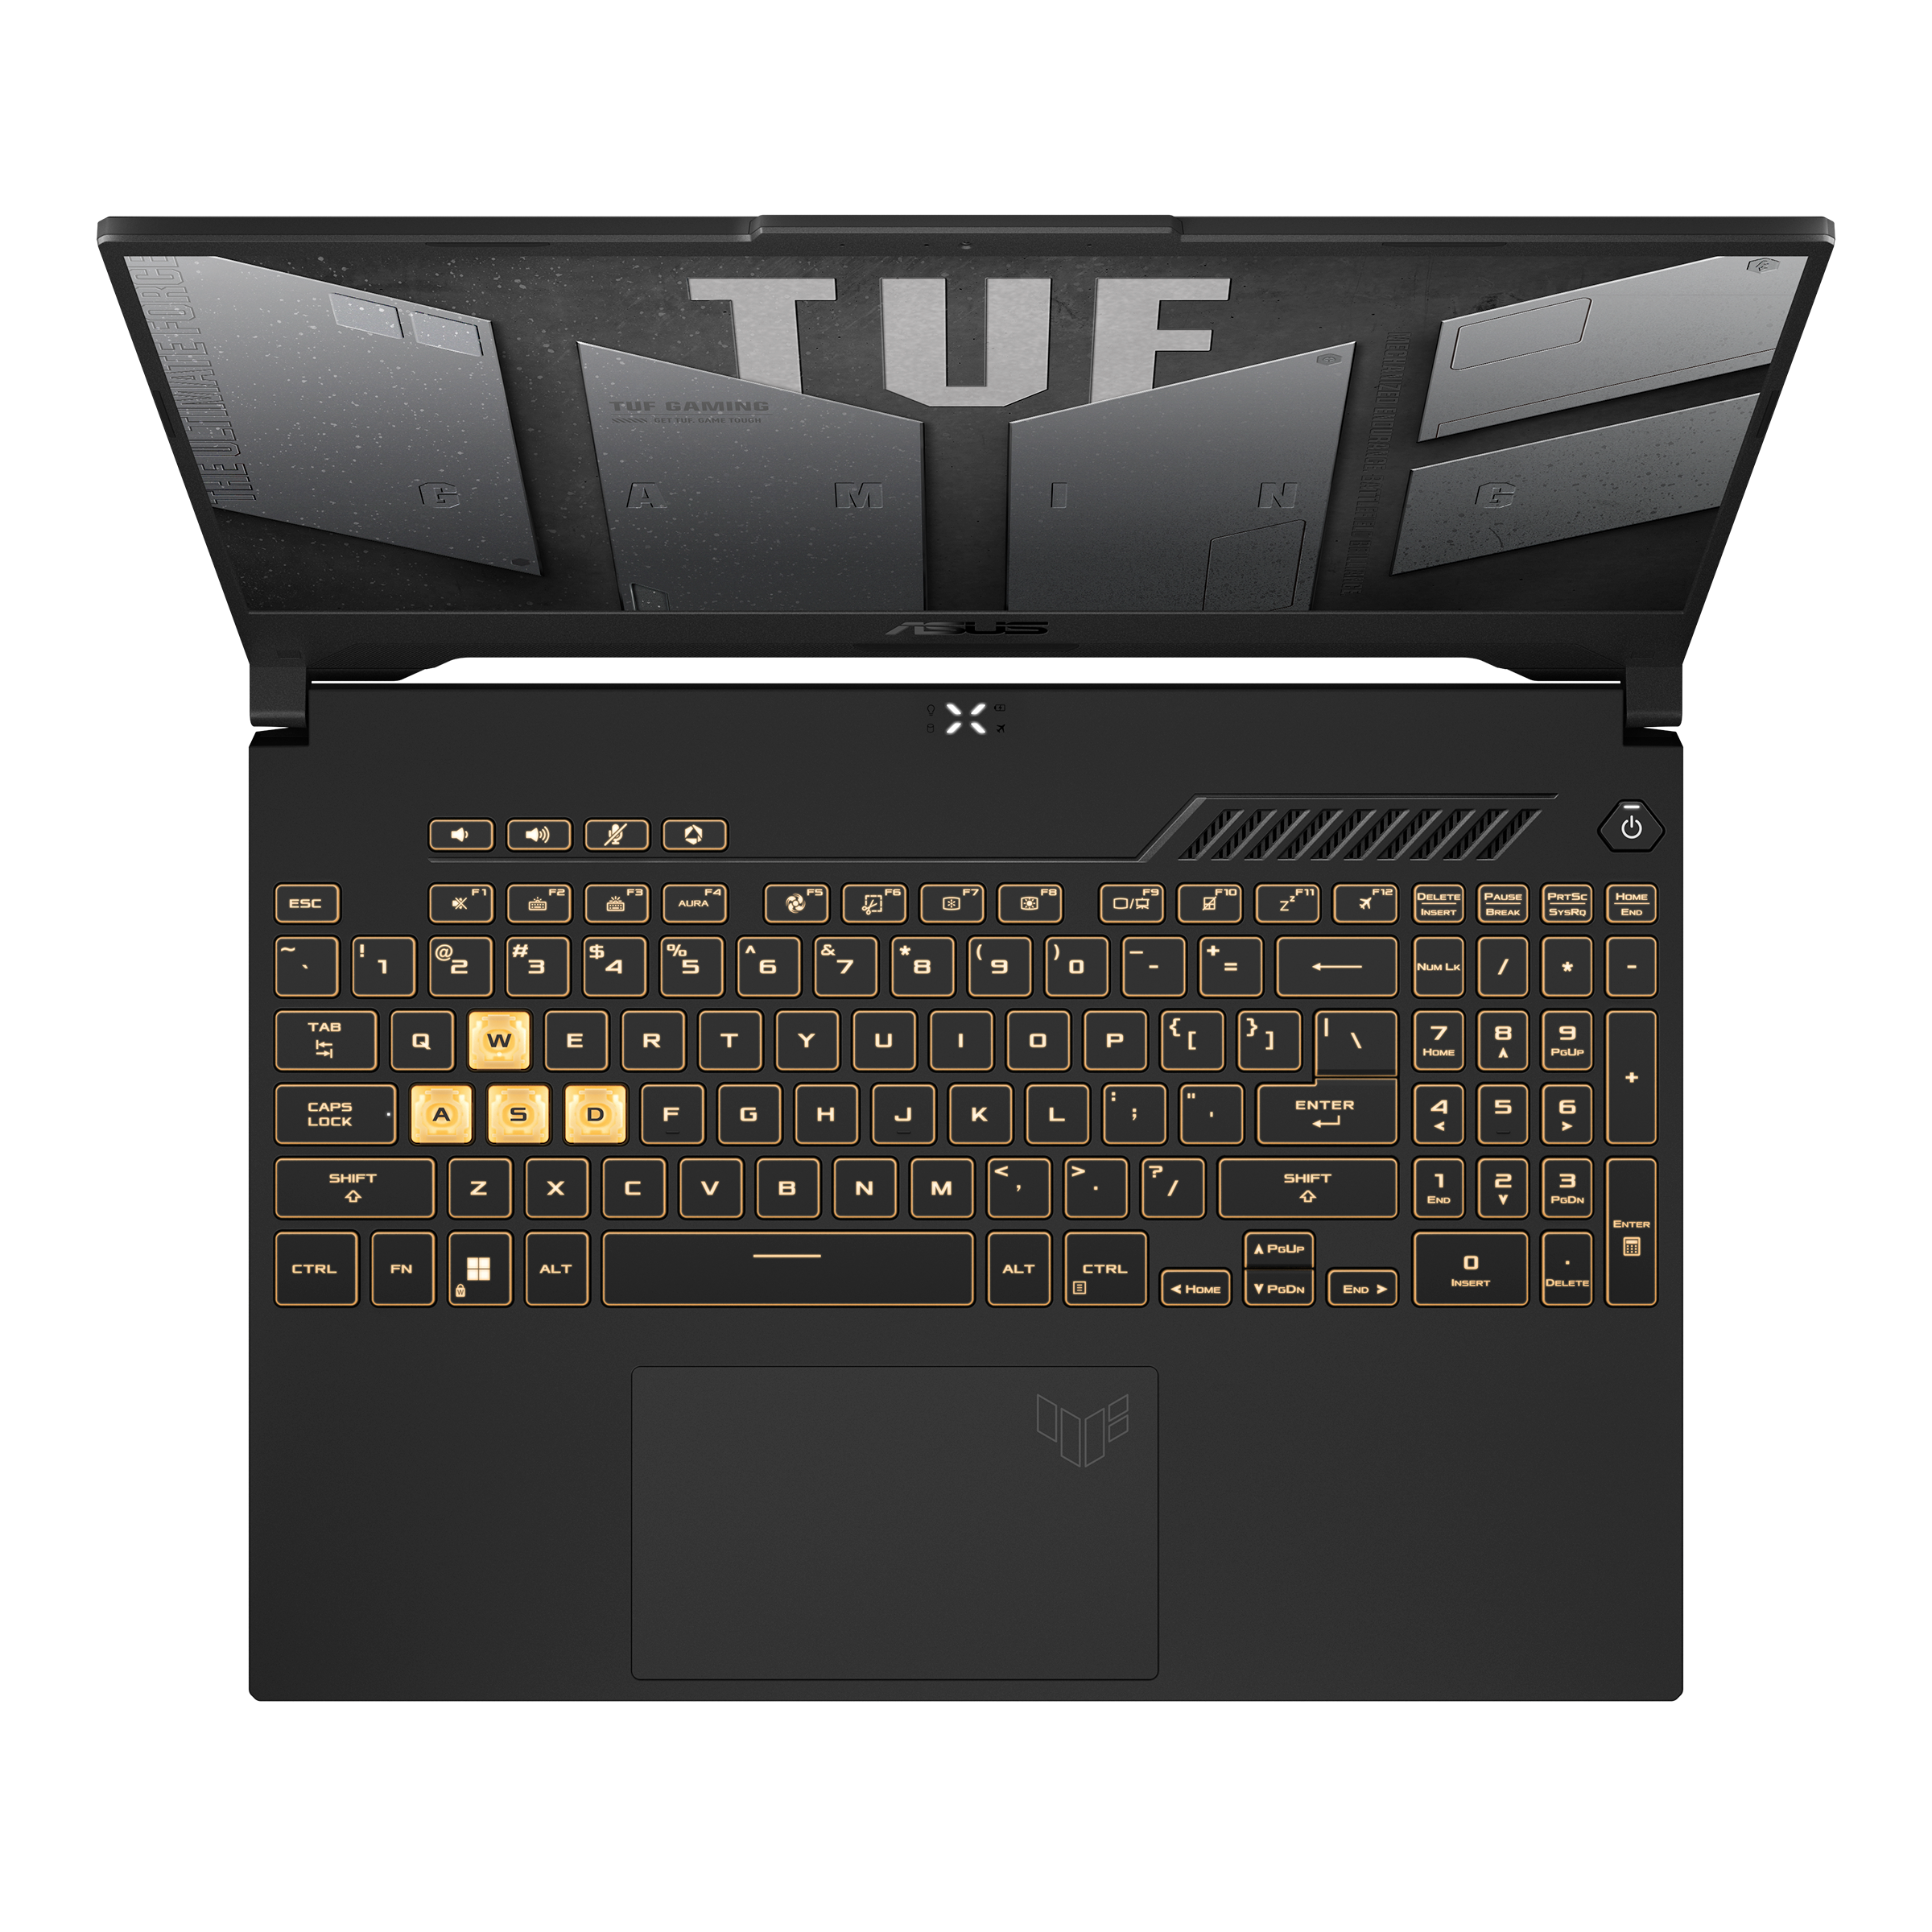 ASUS TUF Gaming F15 (2022)｜Laptops For Gaming｜ASUS USA